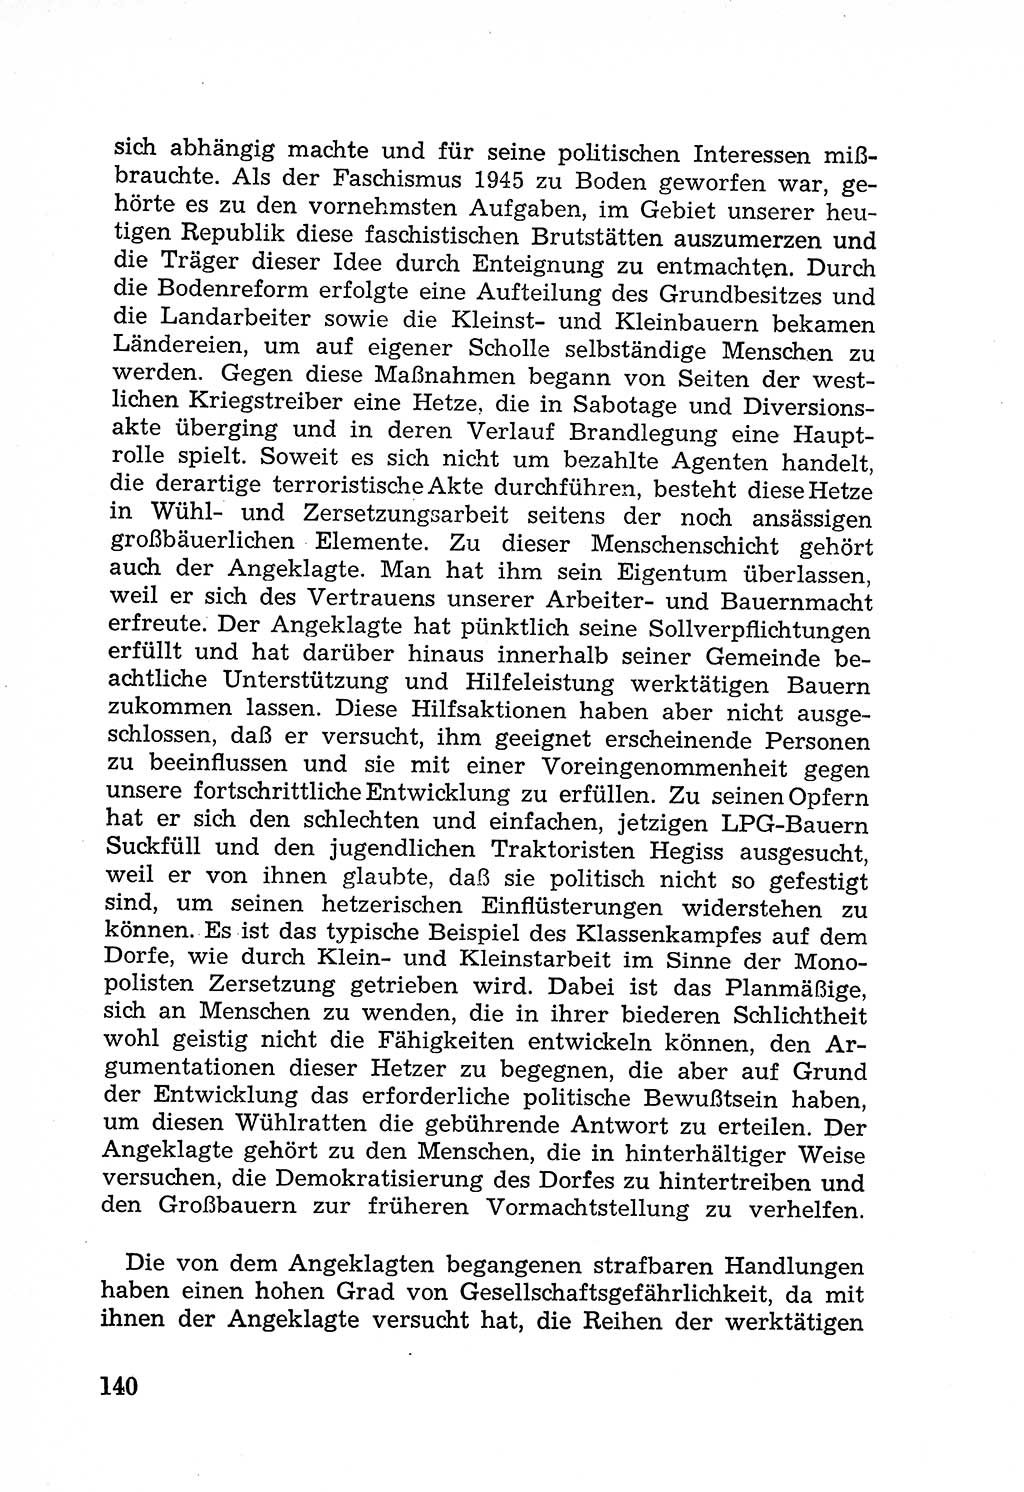 Rechtsstaat in zweierlei Hinsicht, Untersuchungsausschuß freiheitlicher Juristen (UfJ) [Bundesrepublik Deutschland (BRD)] 1956, Seite 140 (R.-St. UfJ BRD 1956, S. 140)